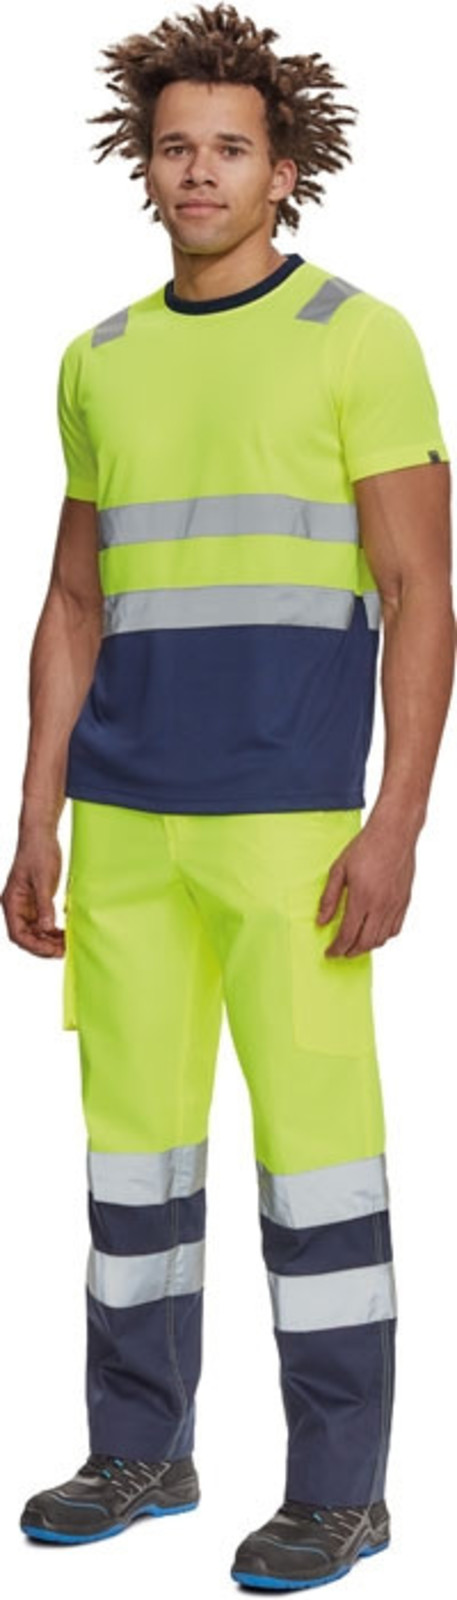 Reflexné tričko Cerva Monzon HV - veľkosť: L, farba: žltá/navy